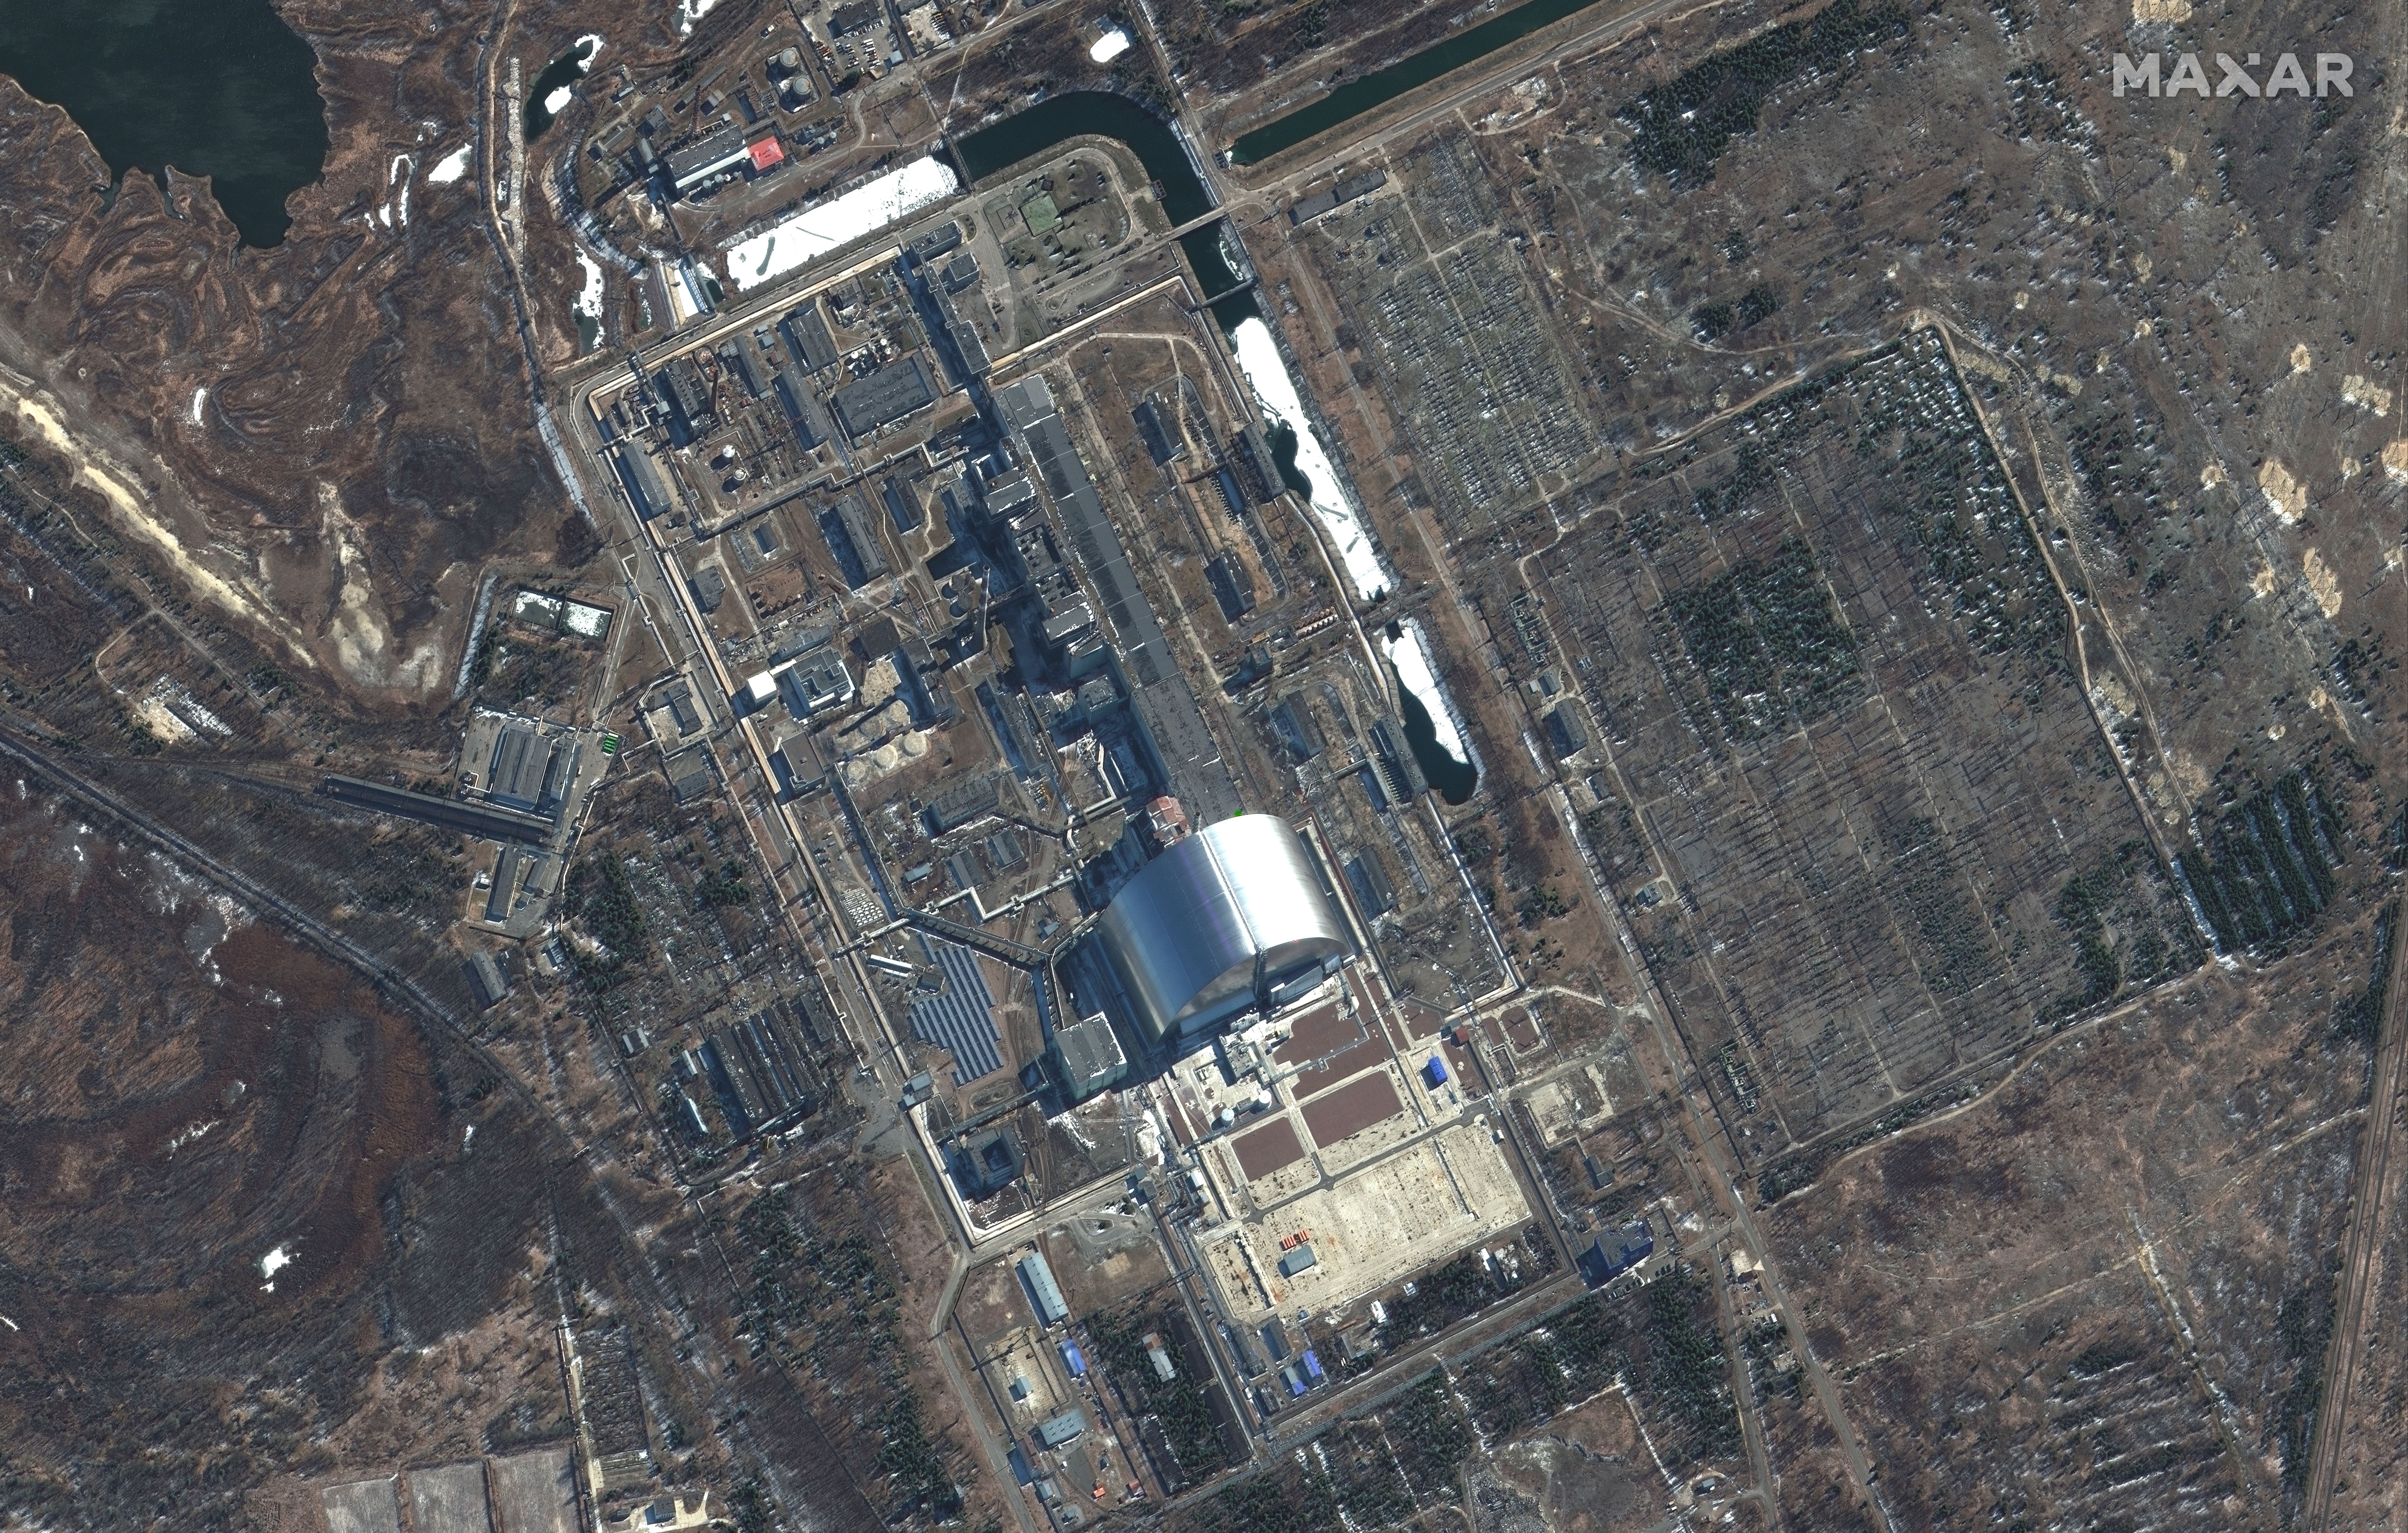 Radioaktív anyagokkal teli labort dúltak fel az oroszok Csernobilban – Ez a keddi hírek után különösen aggasztó